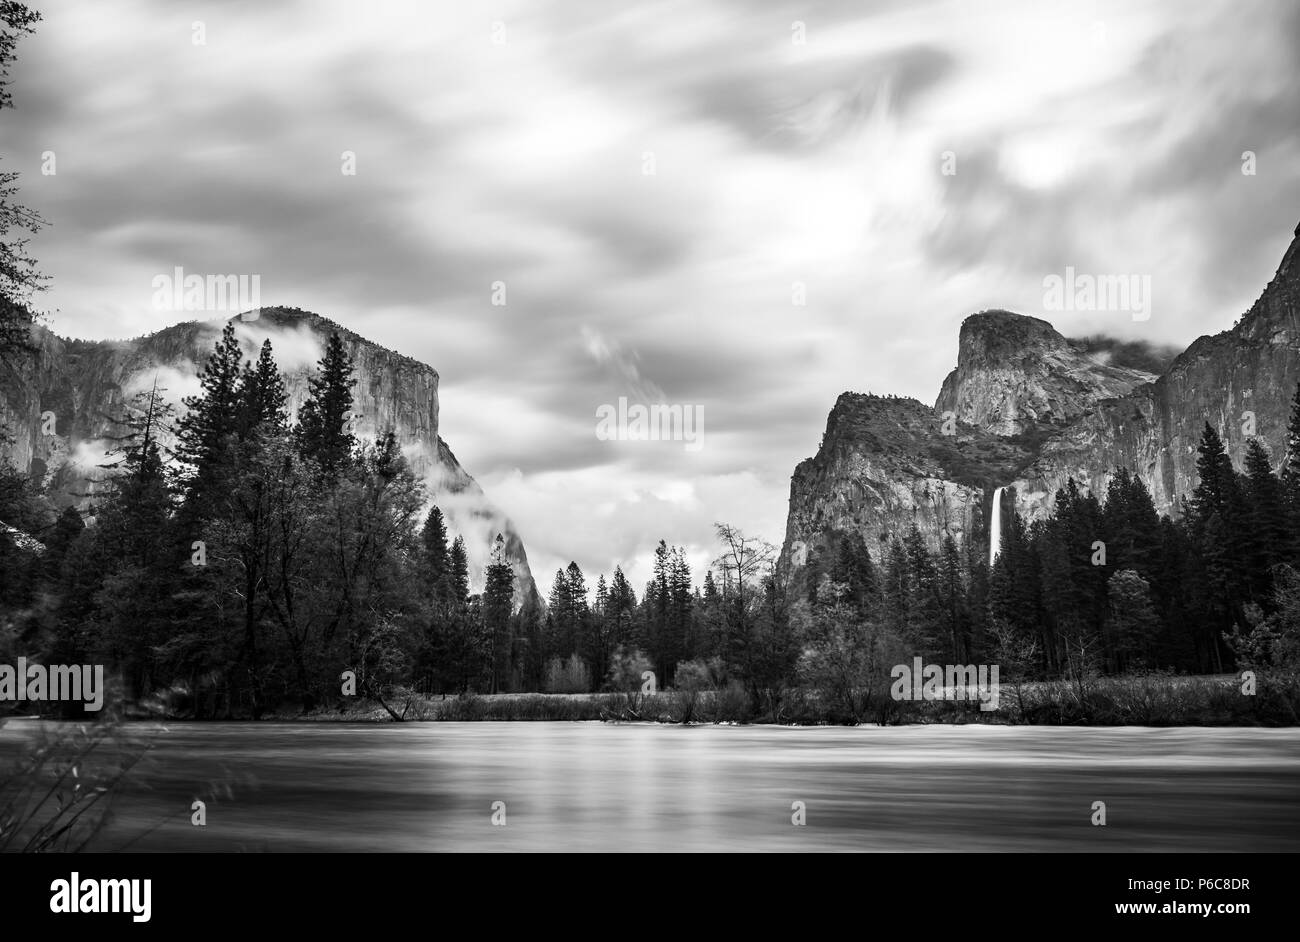 Vue panoramique de la Cathédrale de El Capital et avec l'avant-plan de la rivière falaise,tirer le matin dans la saison du printemps, Yosemite National Park, Californie, USA. Banque D'Images